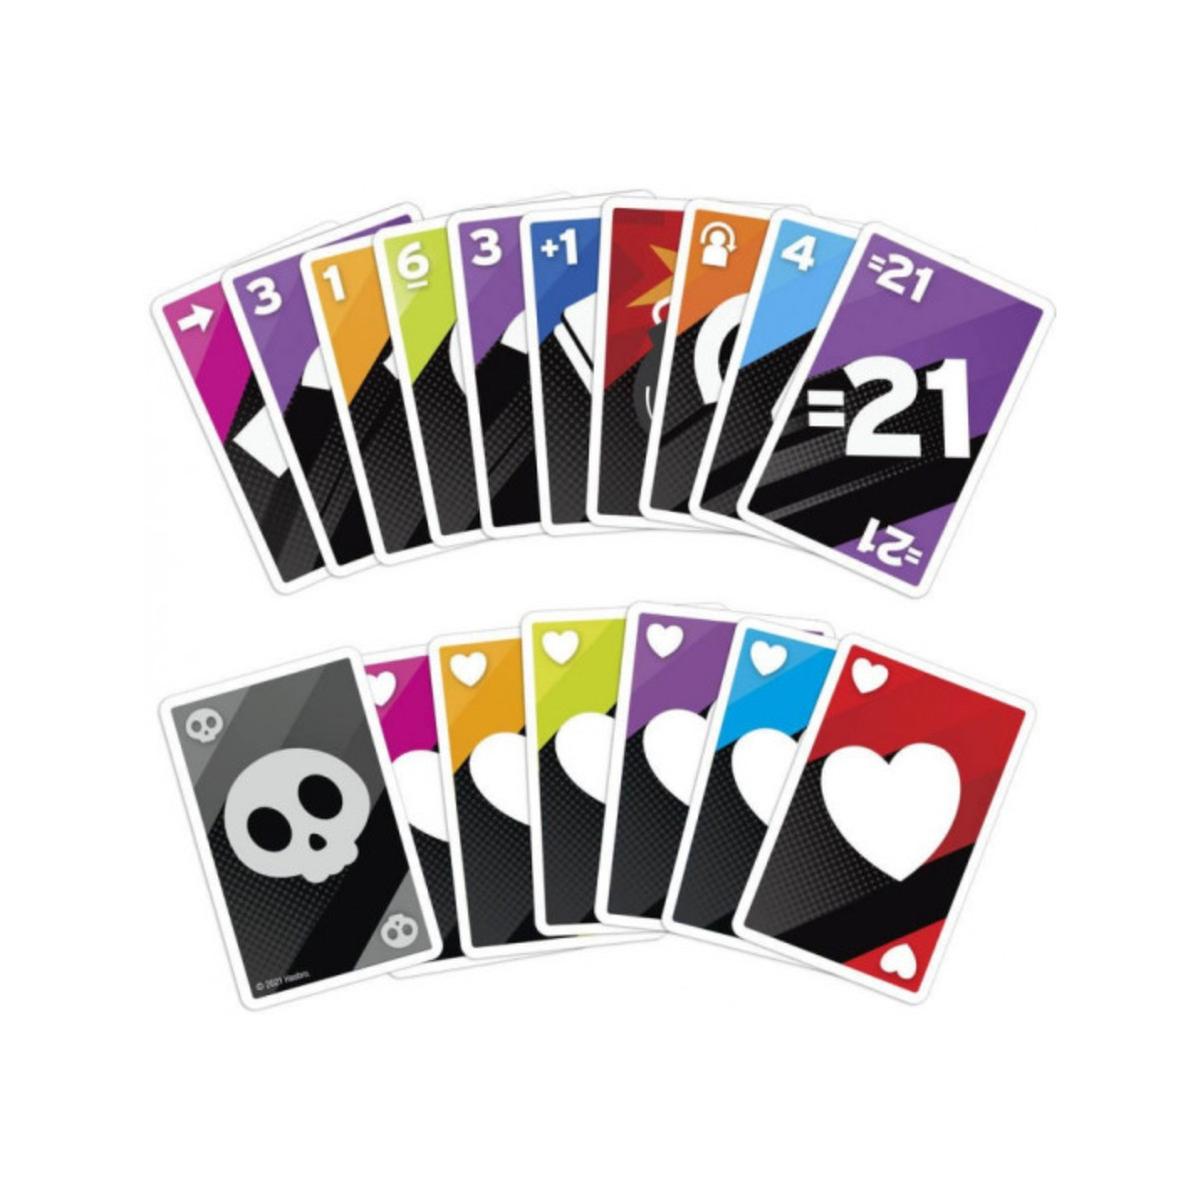 6 ALIVE - Jogo de cartas, Jogos de cartas